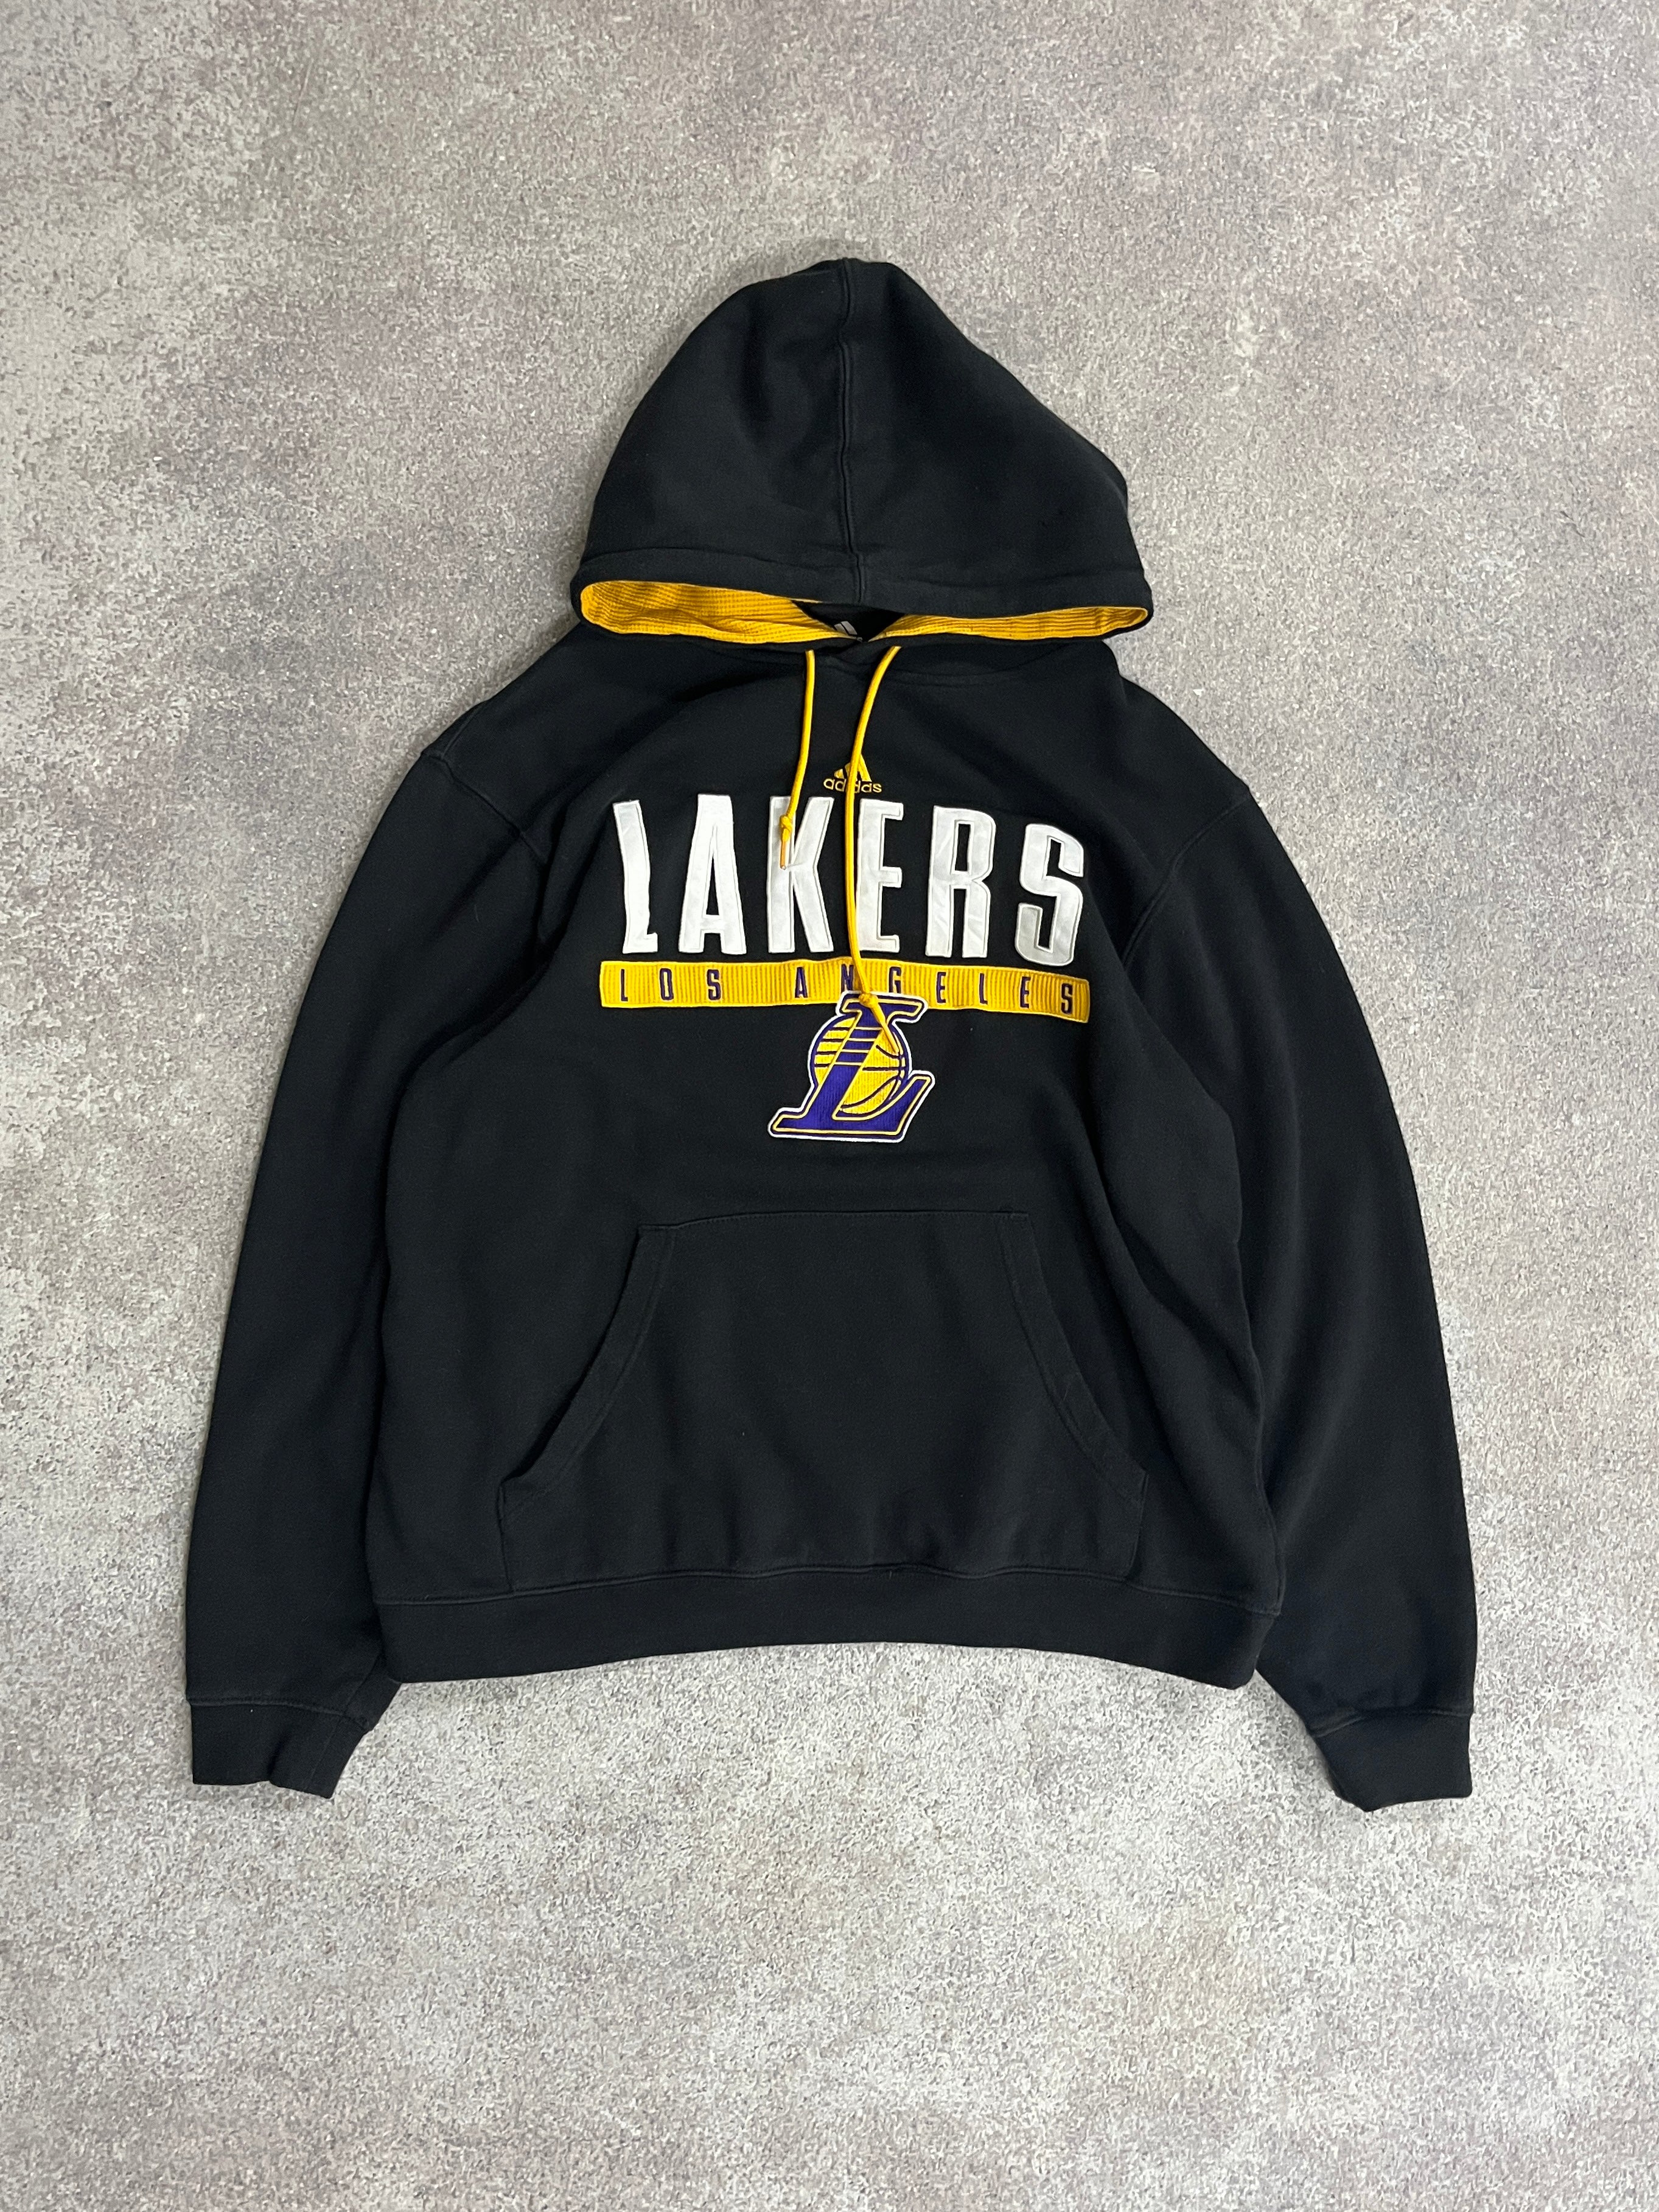 Vintage Lakers Hoodie Black // Medium - RHAGHOUSE VINTAGE